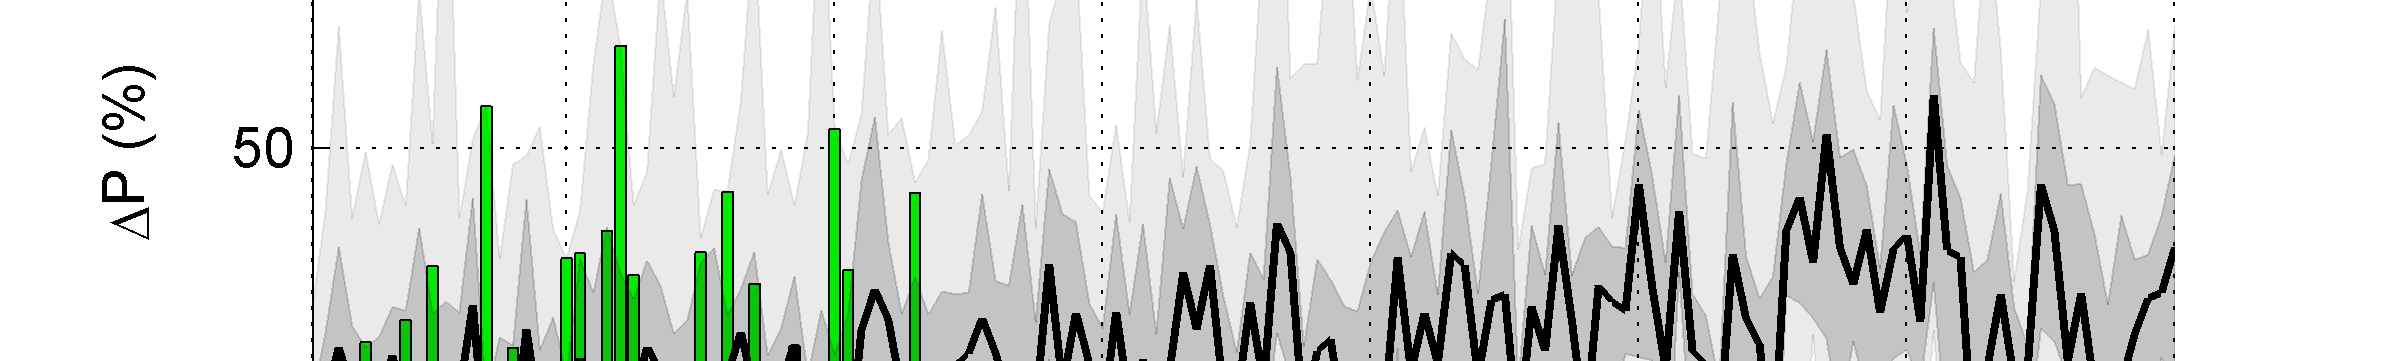 Figur 4-11. Den framtida beräknade procentuella nederbördsförändringen i Gävleborgs län för höstmånaderna (september-november) baserat på samtliga klimatscenarier i Bilaga 1. 4.3 Sammanfattning av klimatförändringar De olika klimatscenarierna har stor spridning men trender kan utläsas ur beräkningsresultaten.